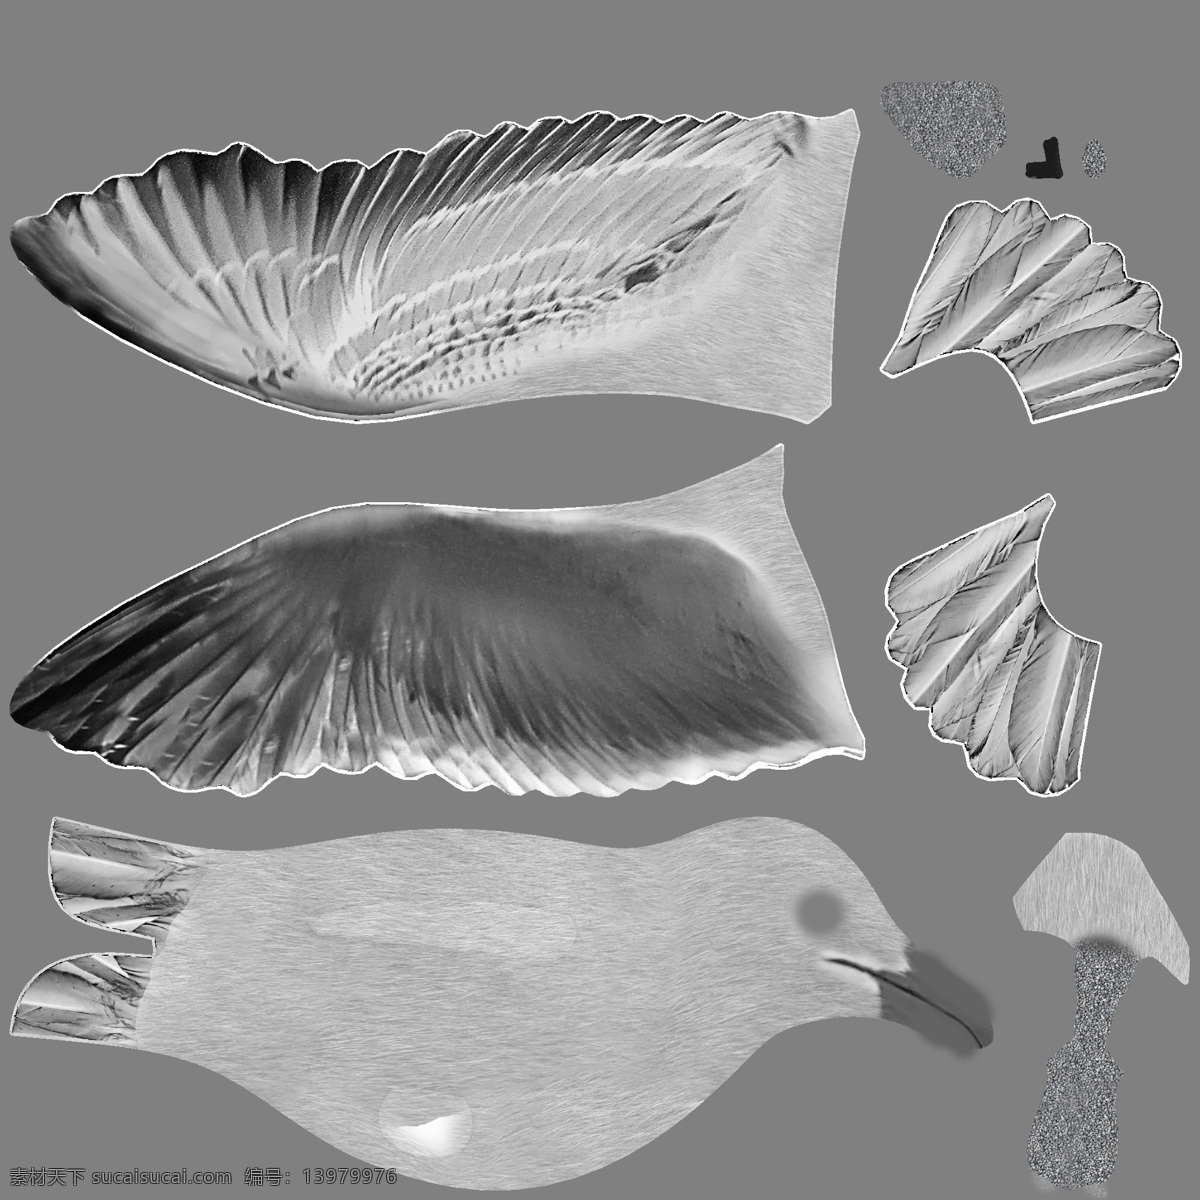 3d设计模型 max 动物 动物模板下载 鸽子 狗 猫 鱼 源文件 展示模型 鸽子模型 动物素材下载 动物模型 优秀动物贴图 优秀马 等动物模型 3d模型素材 其他3d模型